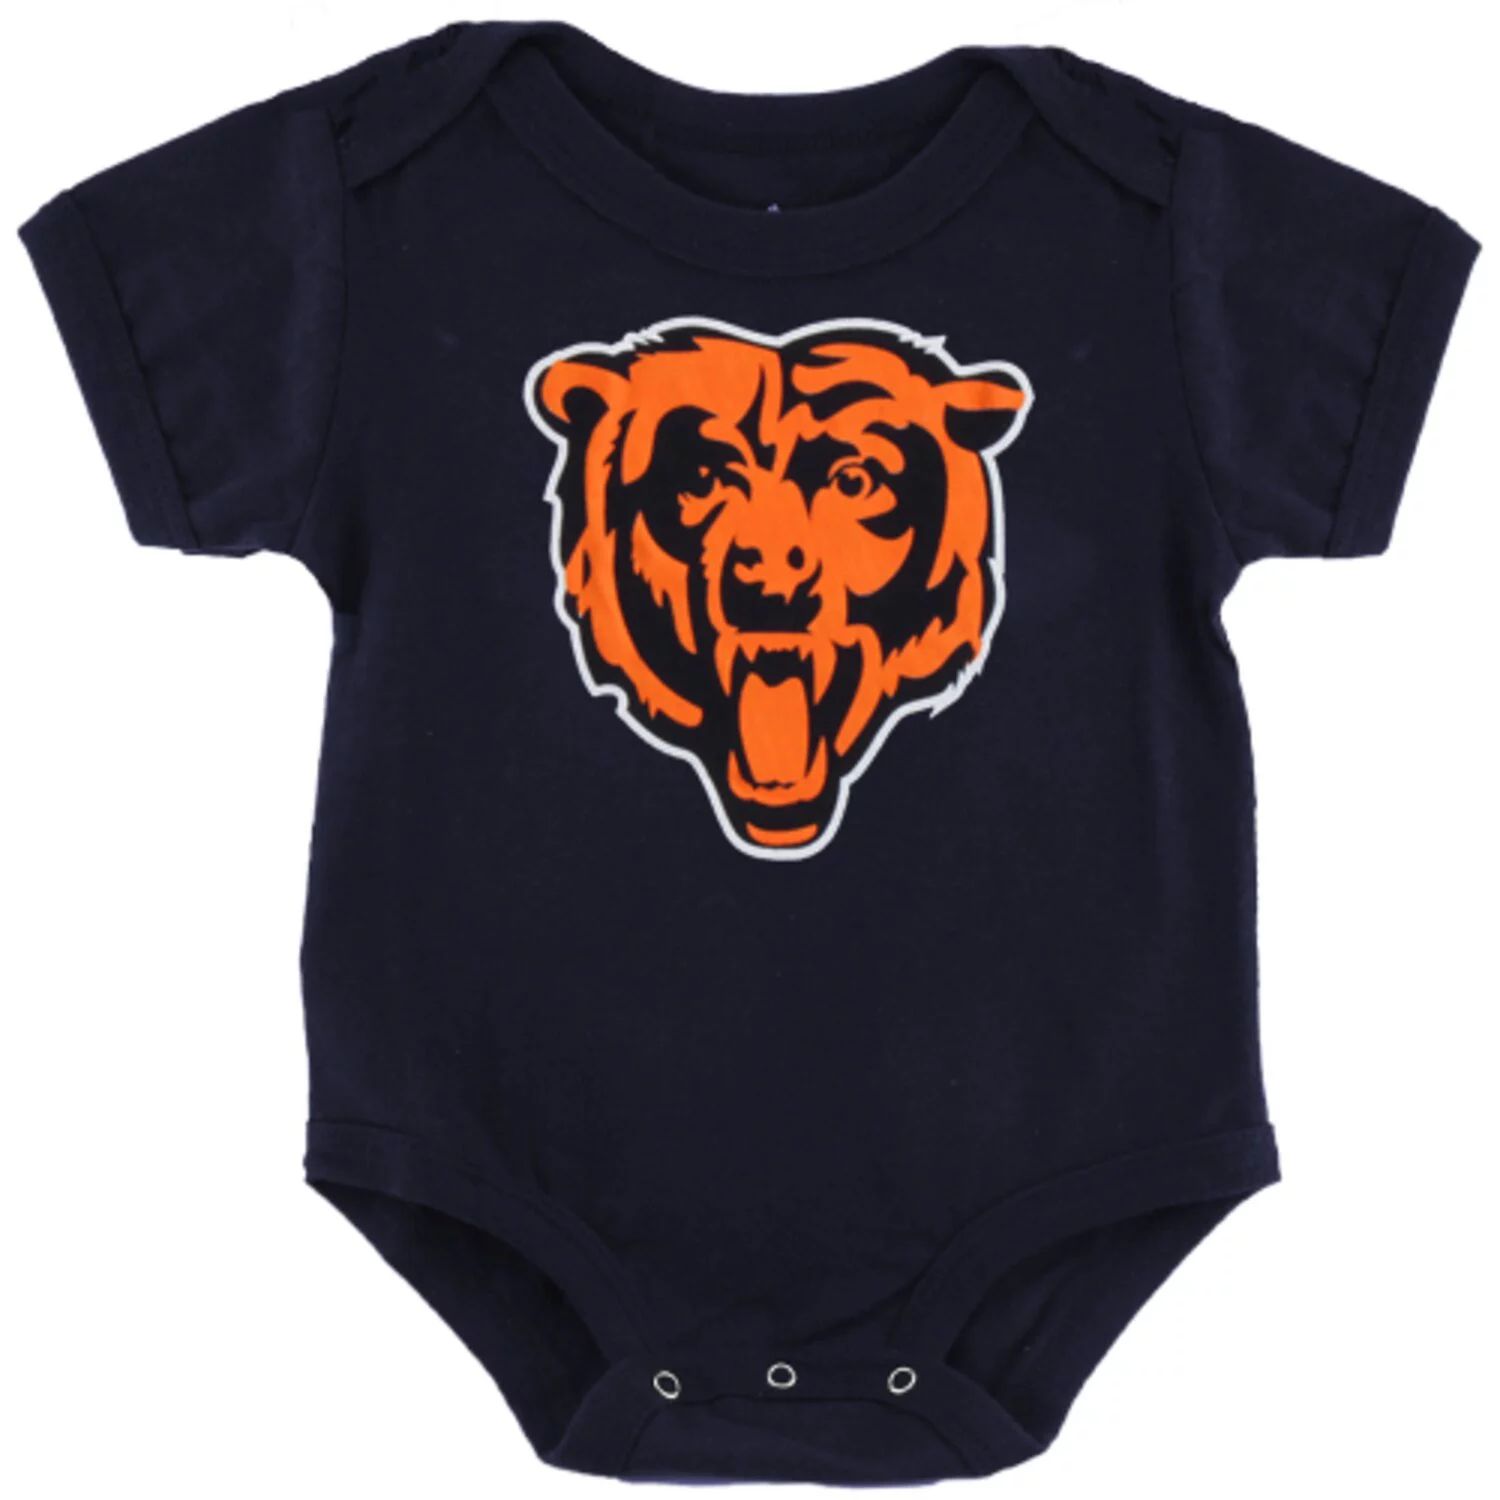 цена Темно-синее боди с логотипом команды Chicago Bears для новорожденных Outerstuff